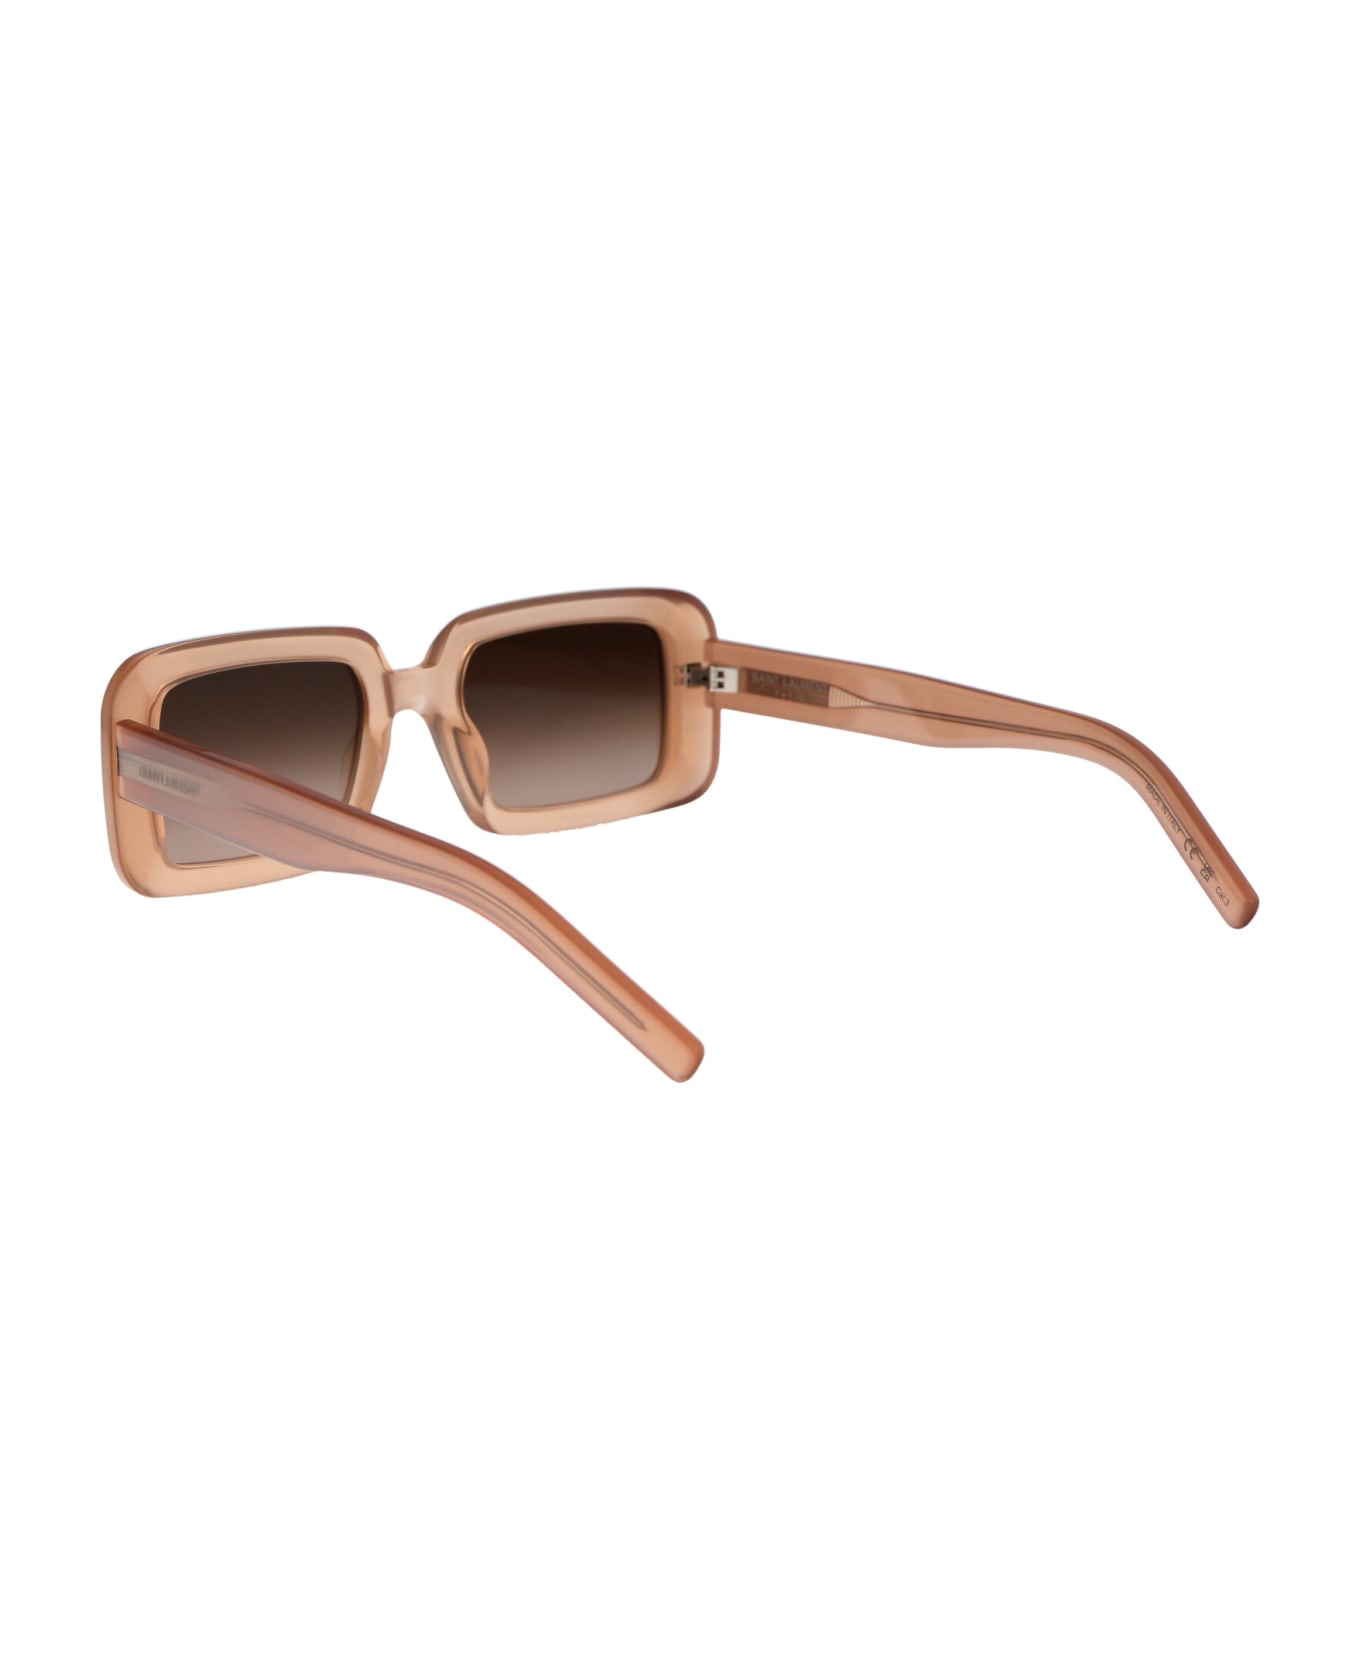 Saint Laurent Eyewear Sl 534 Sunrise Sunglasses - 014 ORANGE ORANGE BROWN サングラス